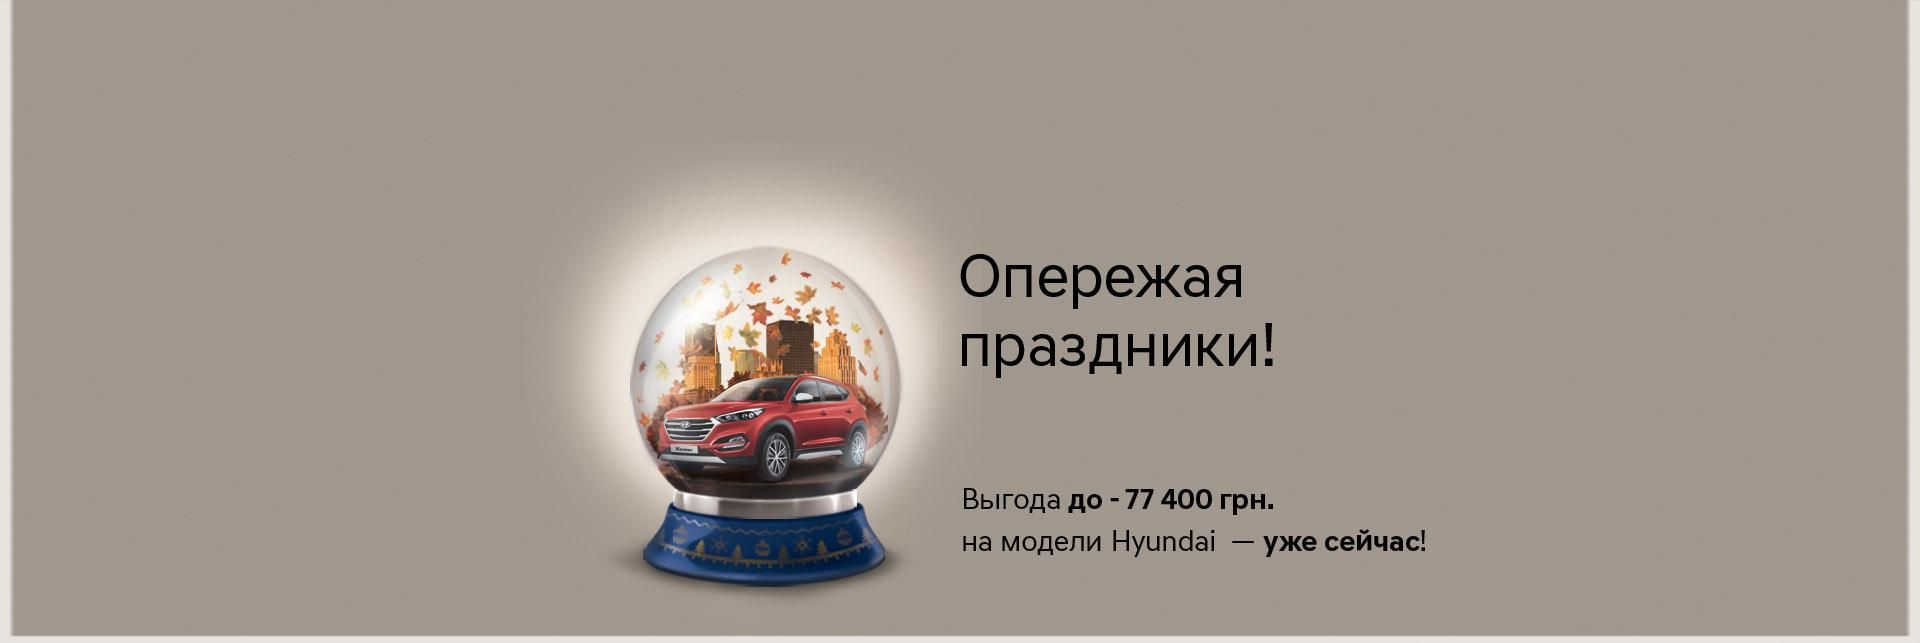 HYUNDAI в Украине: покупать автомобили в октябре выгодно! - 27 жовтня 2016 - Телеканал новин 24